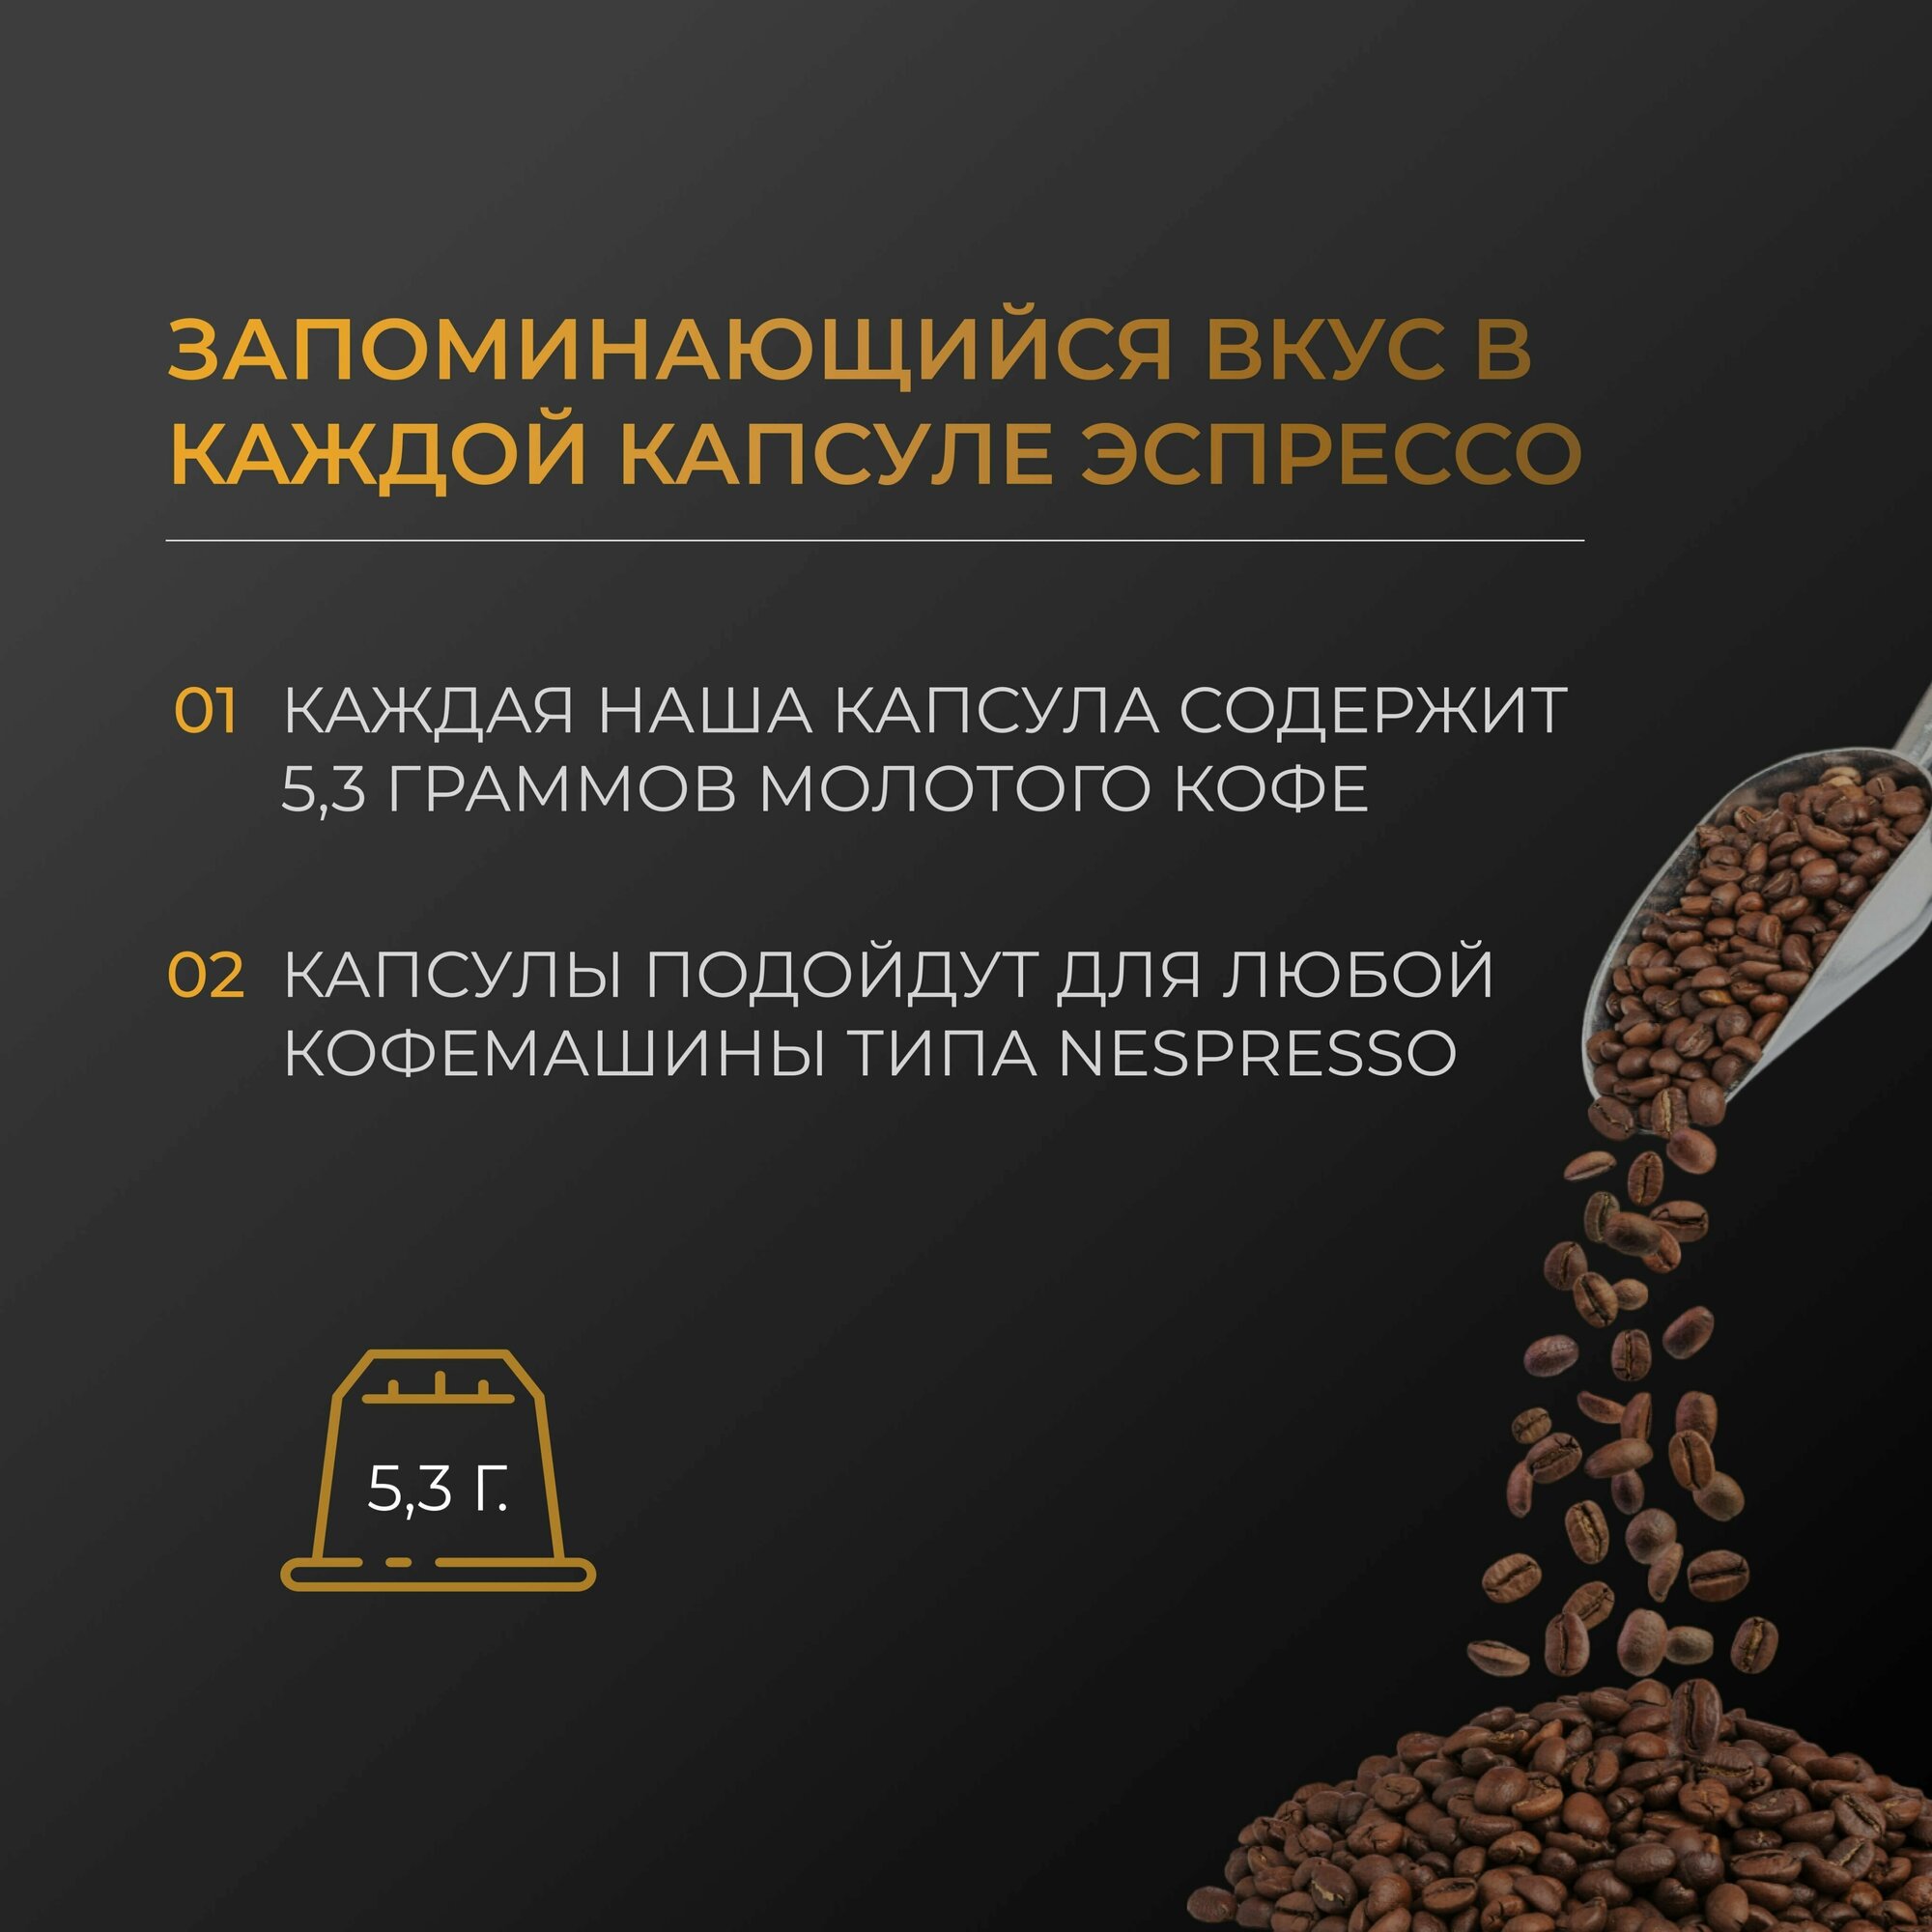 Эспрессо Арабика 100% - Капсулы Testa Rossa - 30 шт, набор кофе в капсулах неспрессо, для кофемашины NESPRESSO - фотография № 4